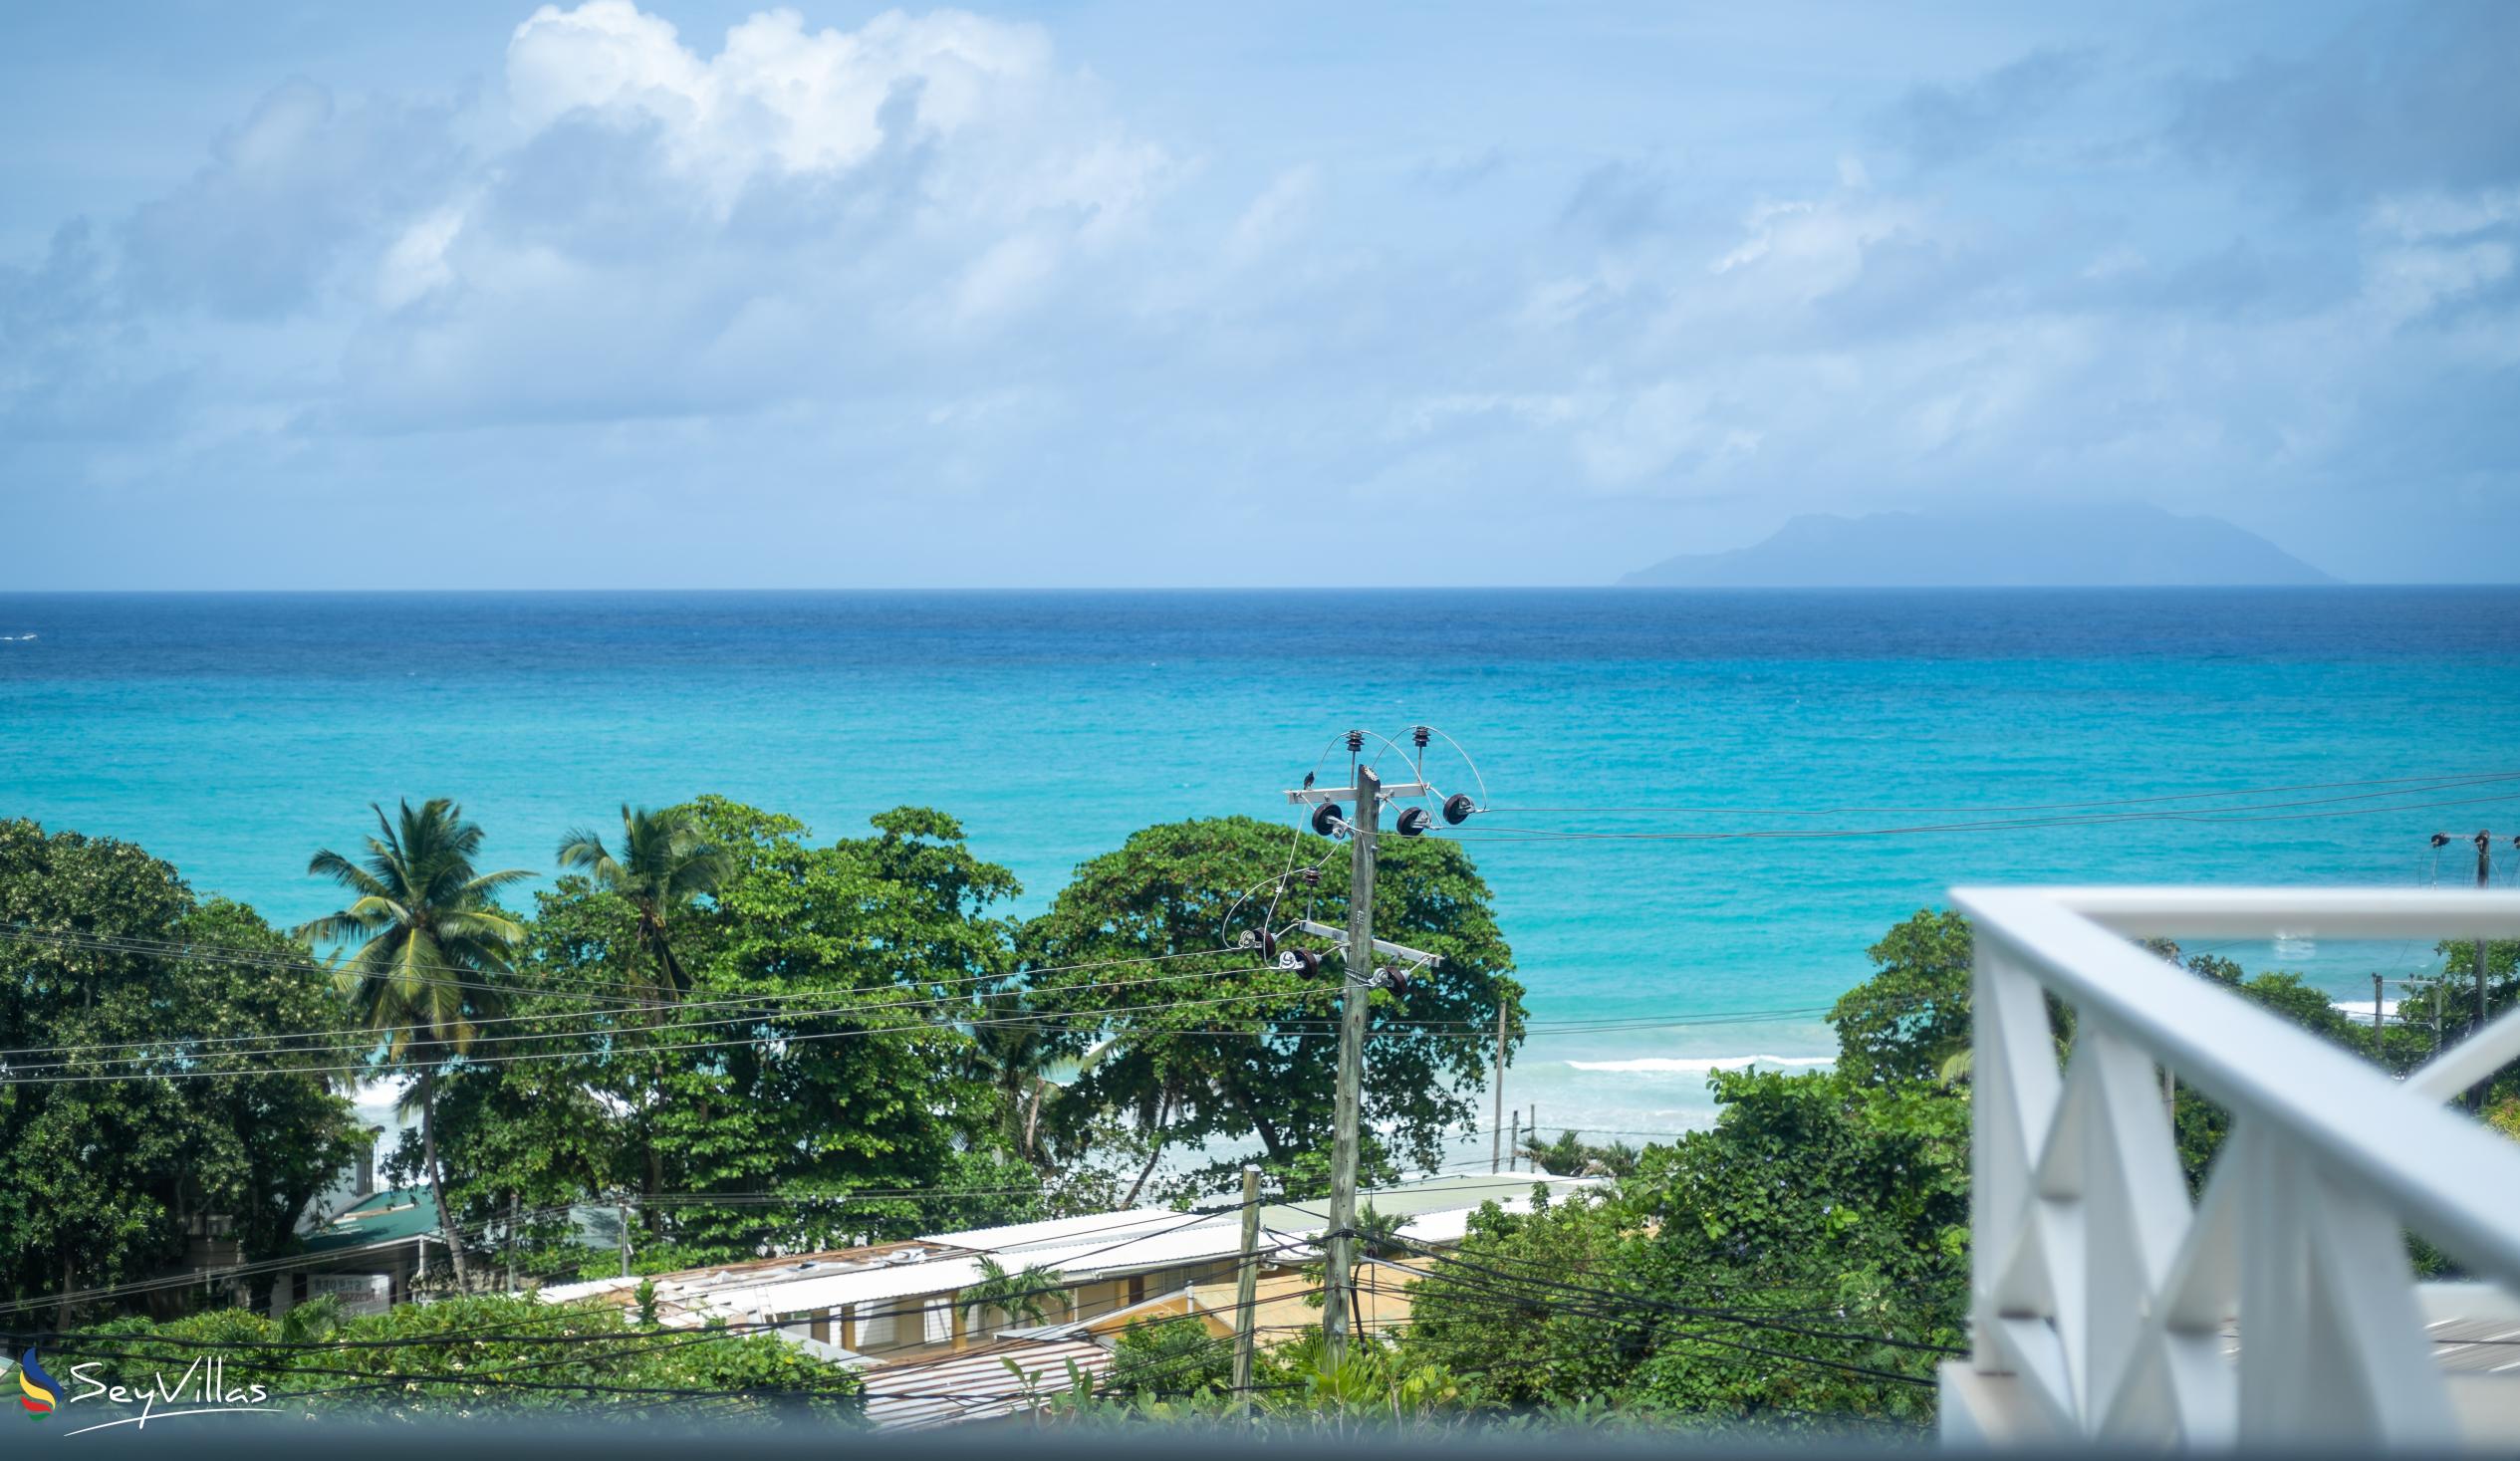 Foto 49: Villa Roscia - Meerblickzimmer - Mahé (Seychellen)